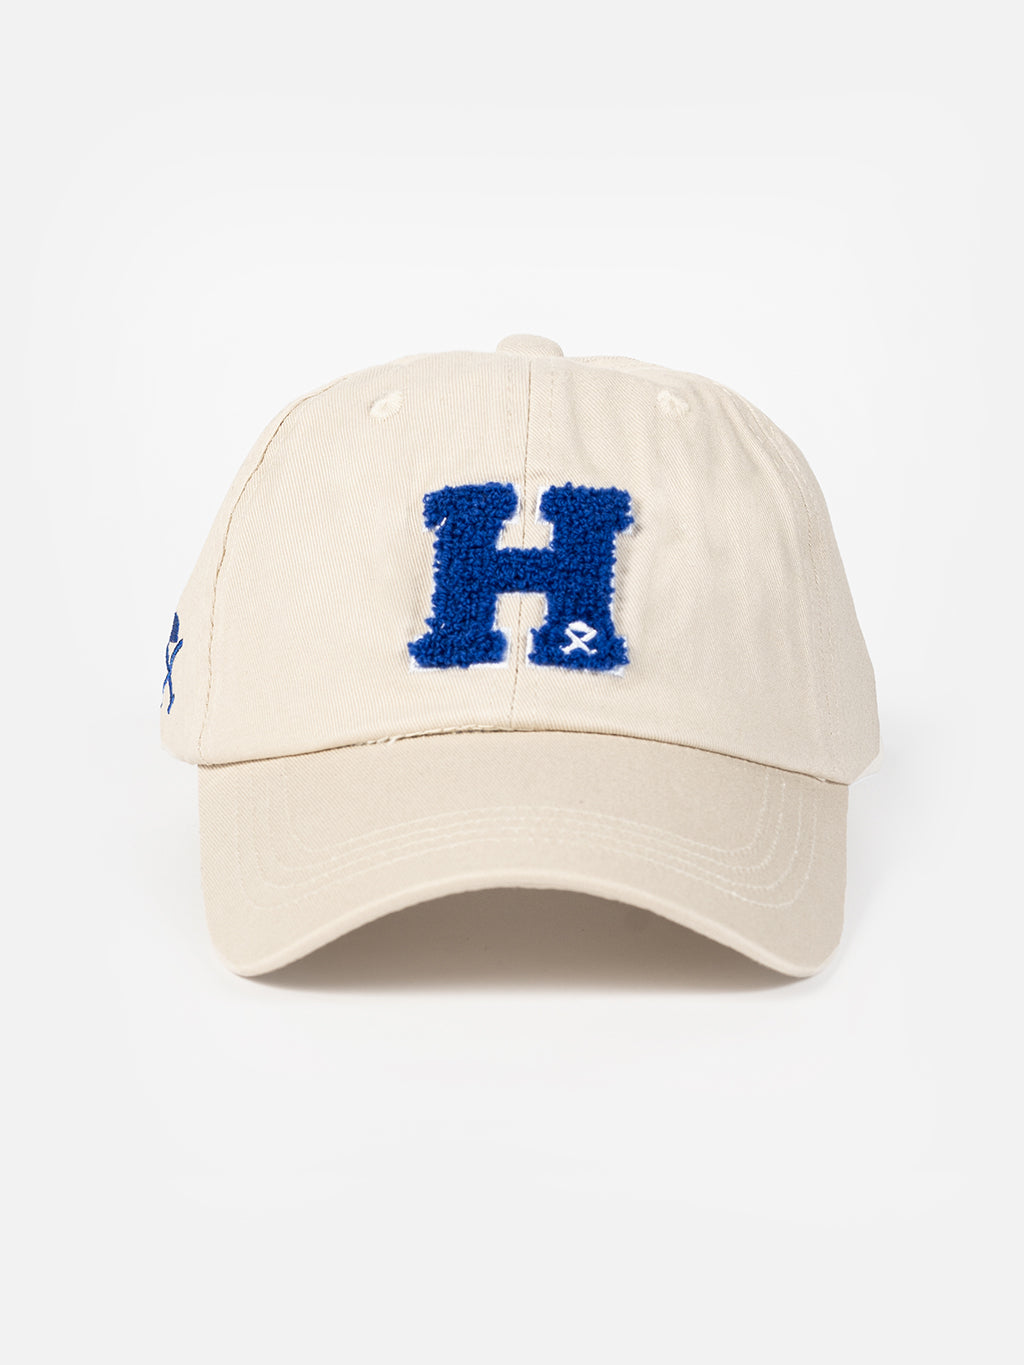 H cap